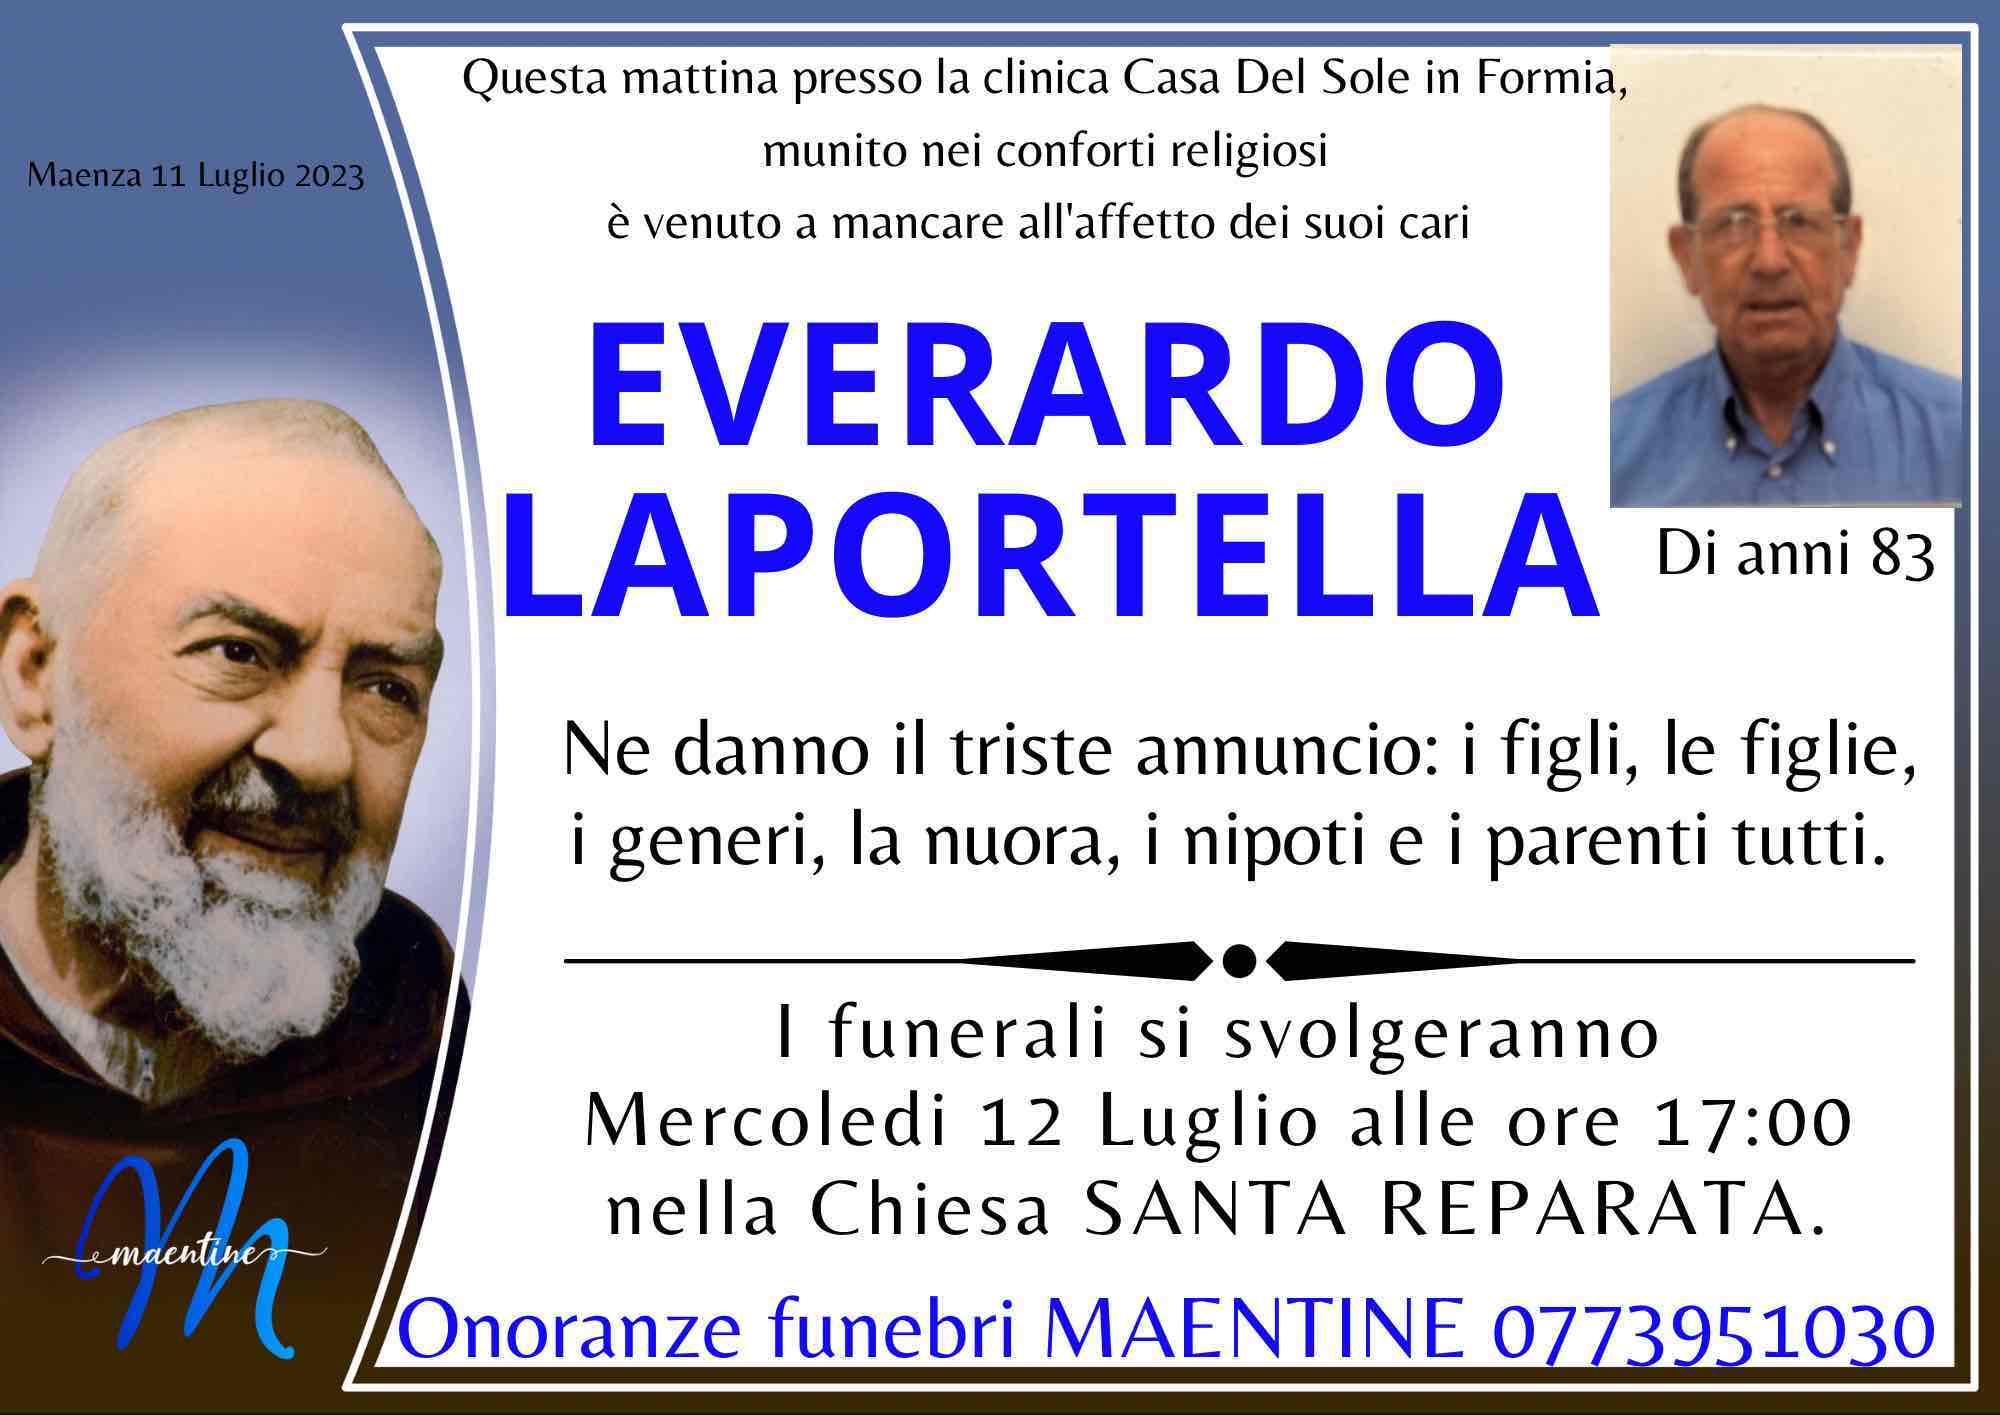 Everardo Laportella